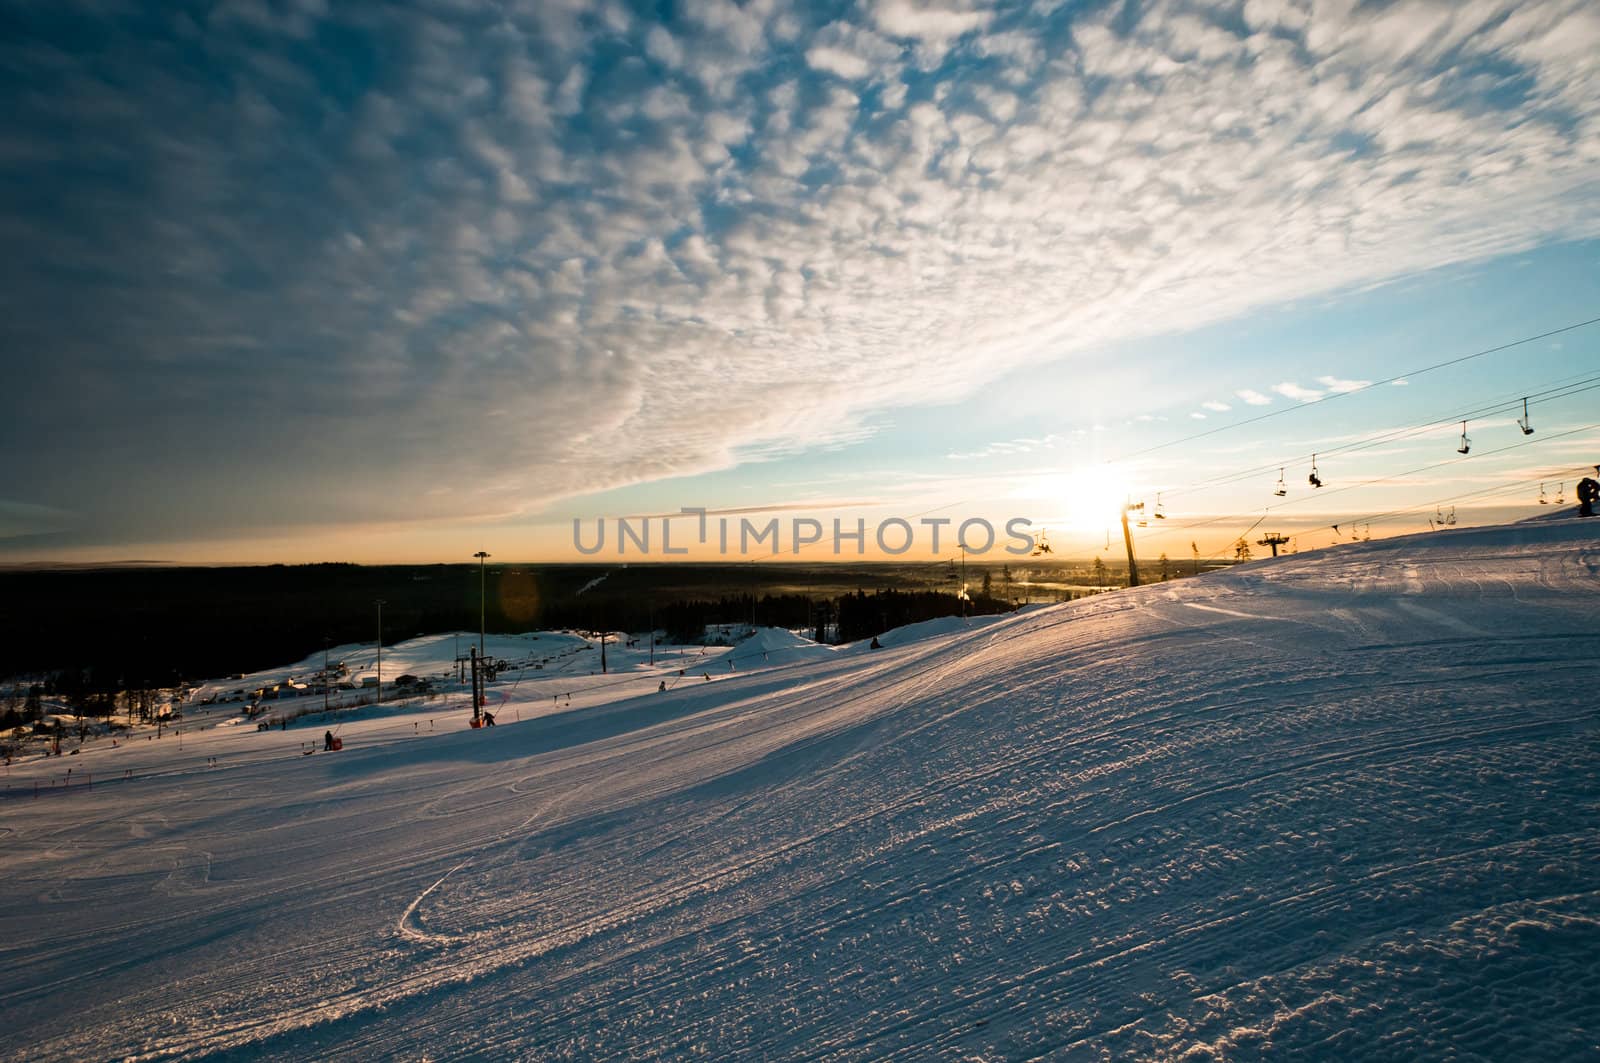 Ski resort at sunrise by dmitryelagin